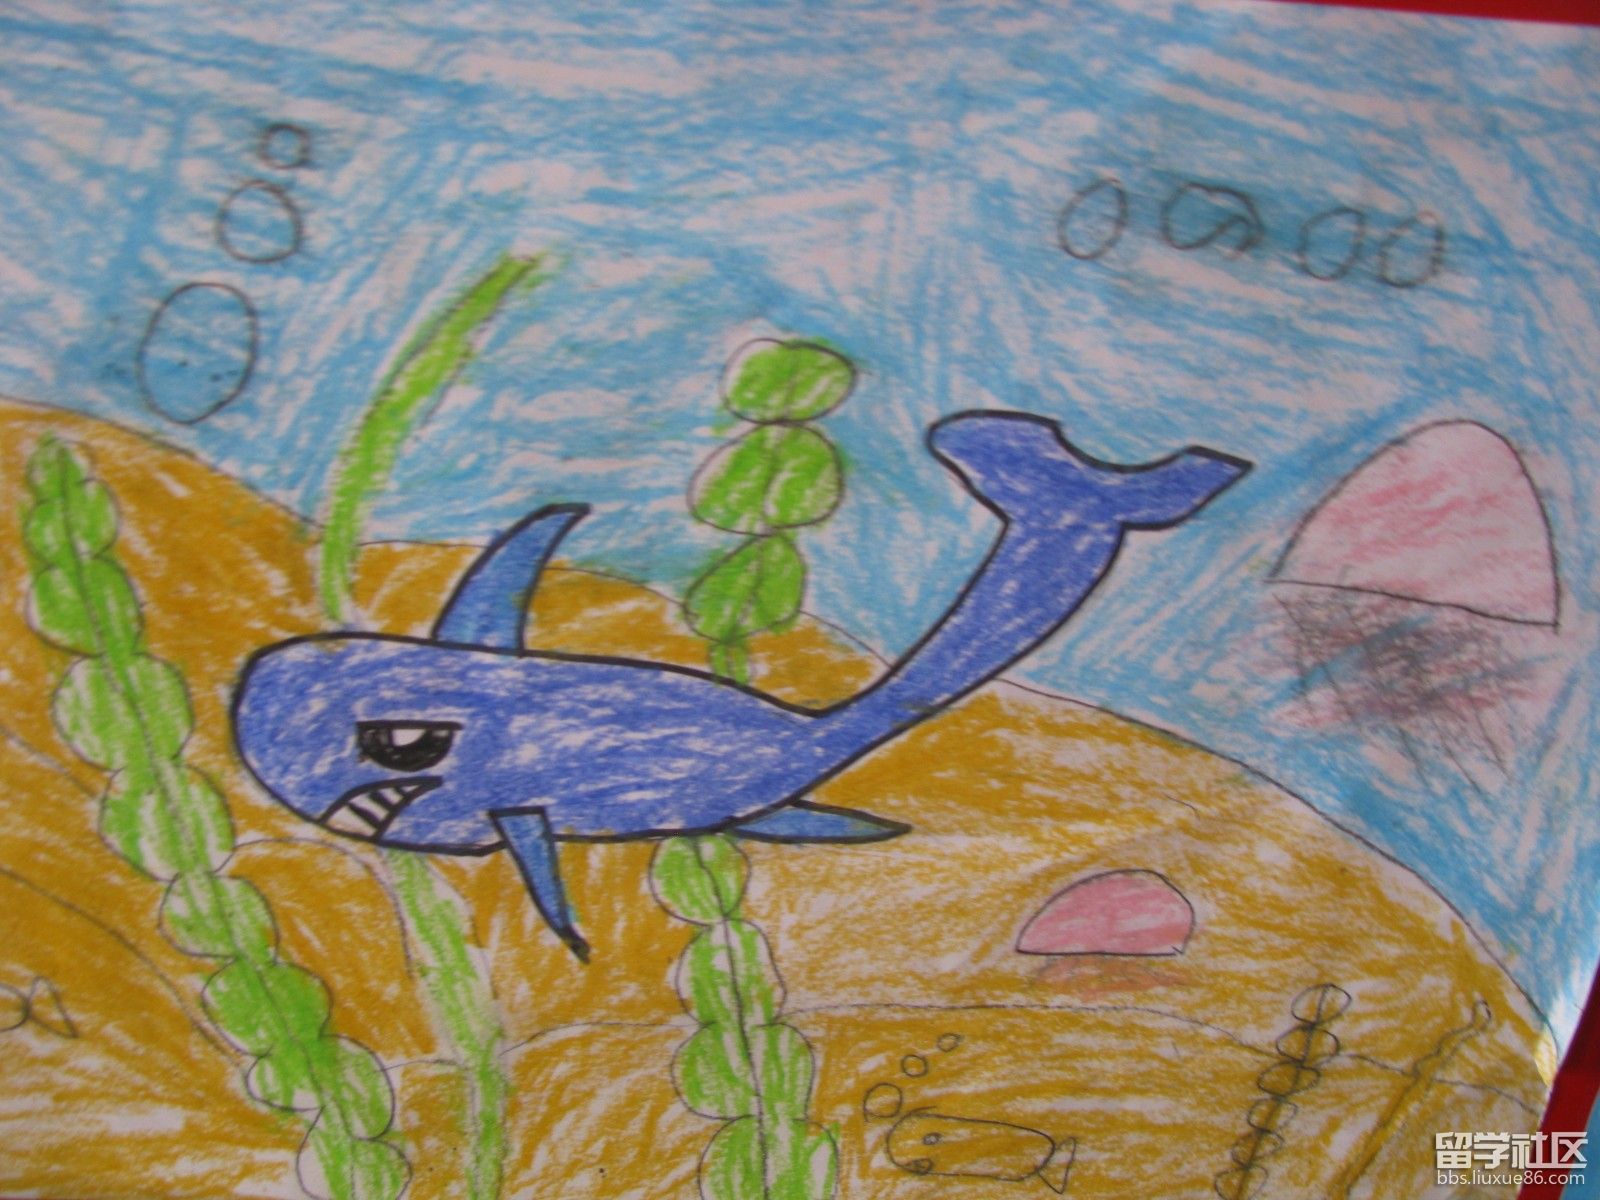 可爱小扁鱼简笔画画法图片步骤 - 有点网 - 好手艺